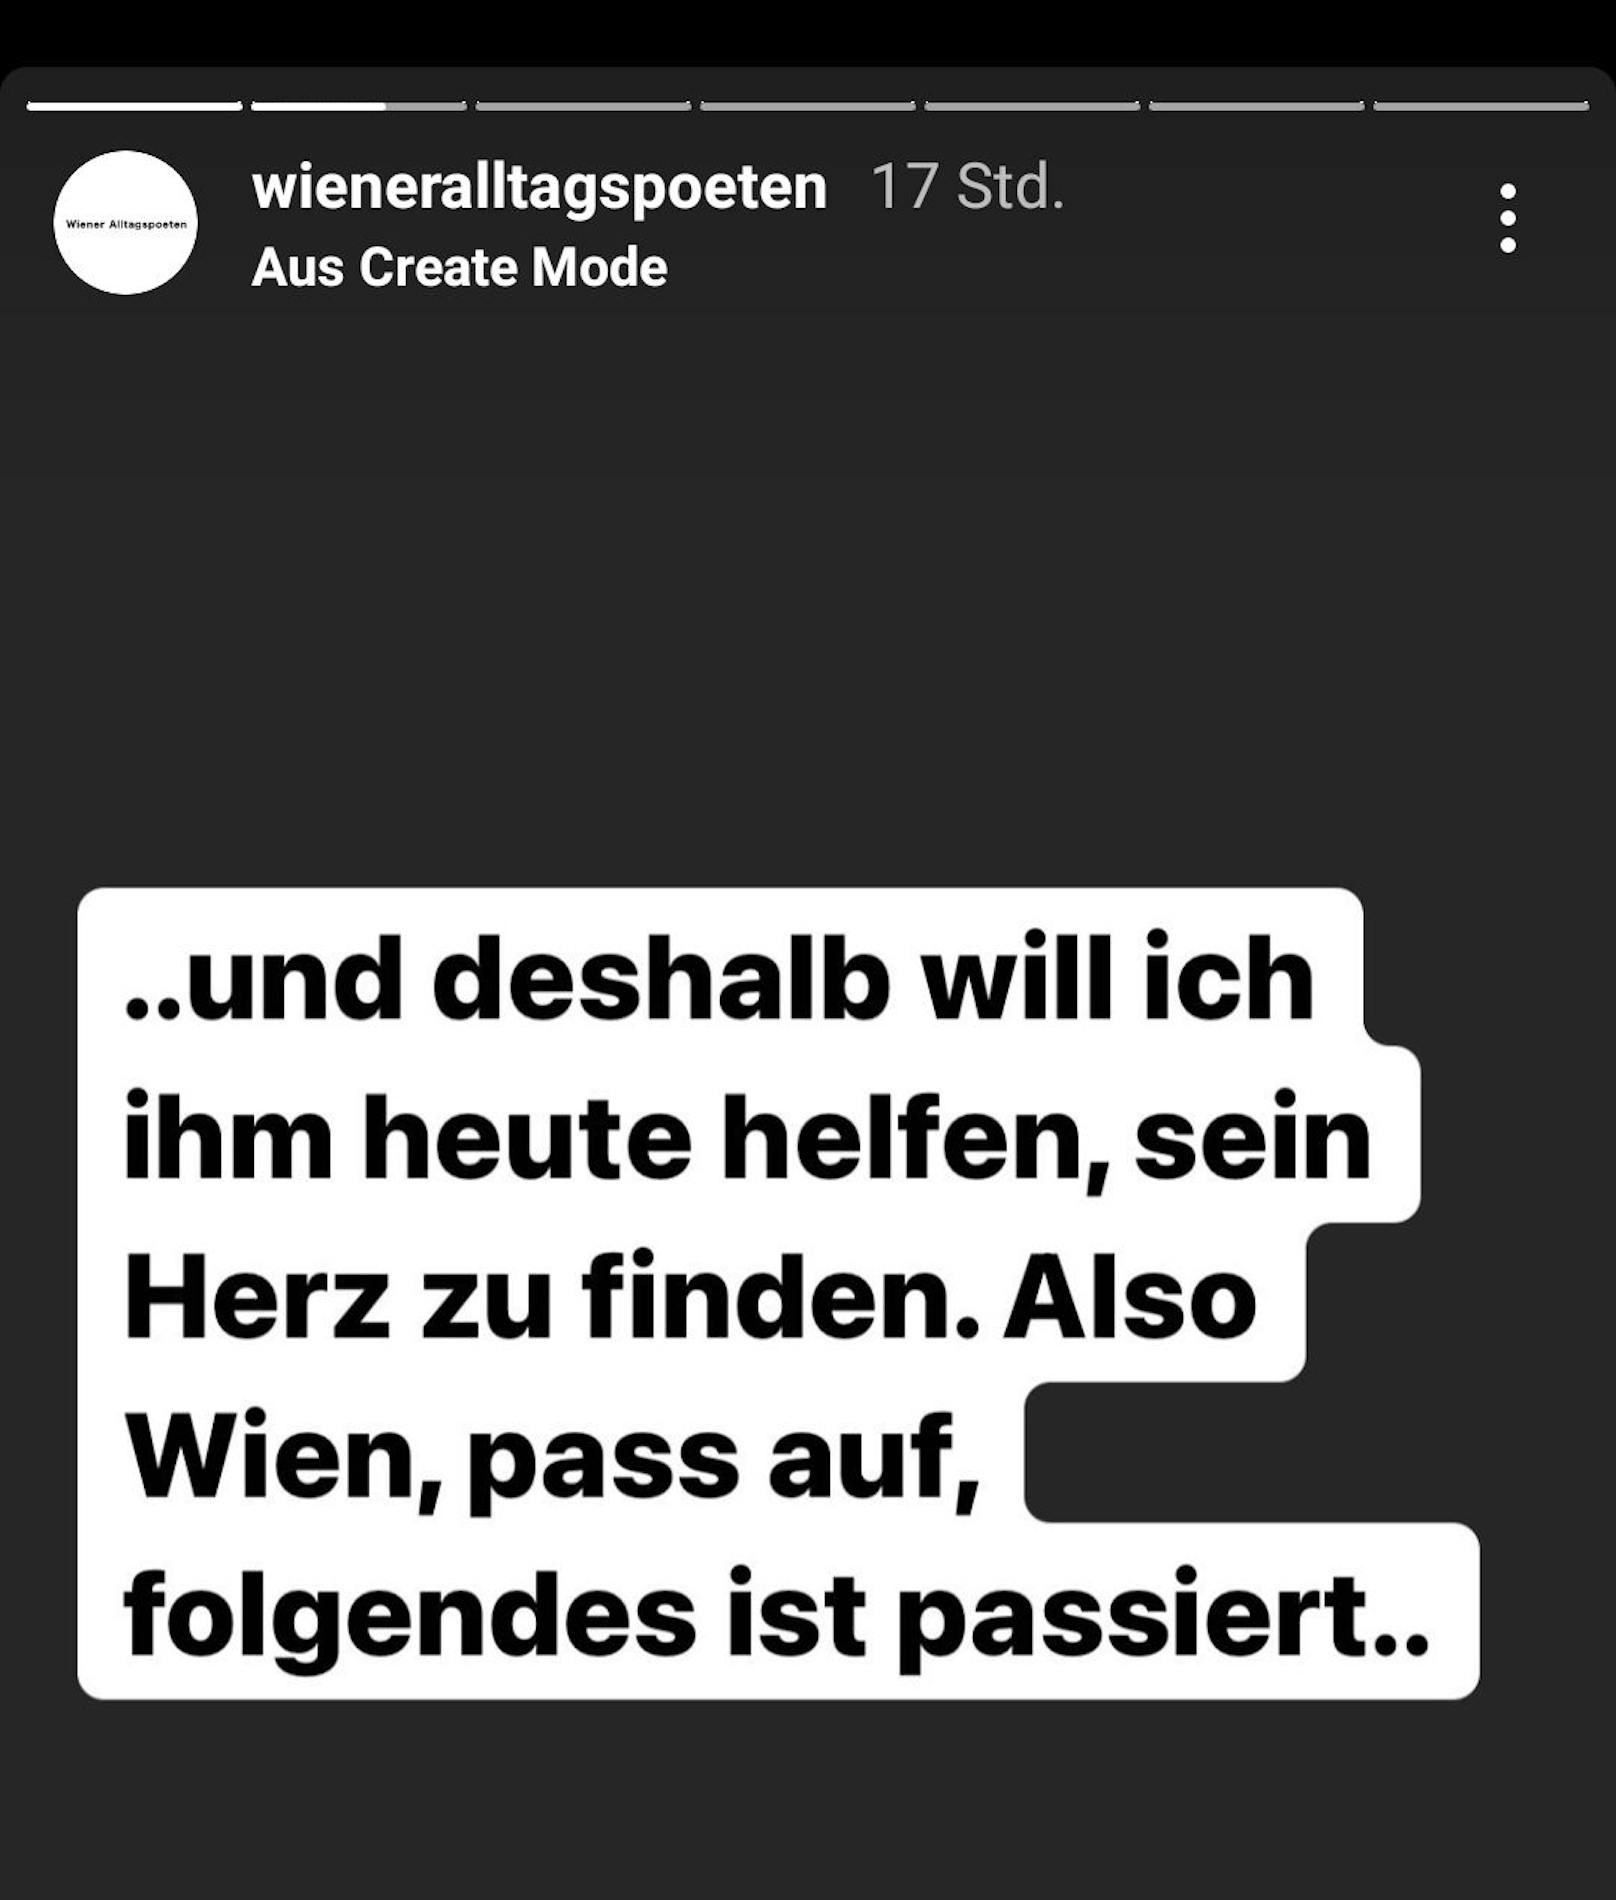 Der Account "Wiener Alltagspoeten" startete auf Instagram einen Aufruf.